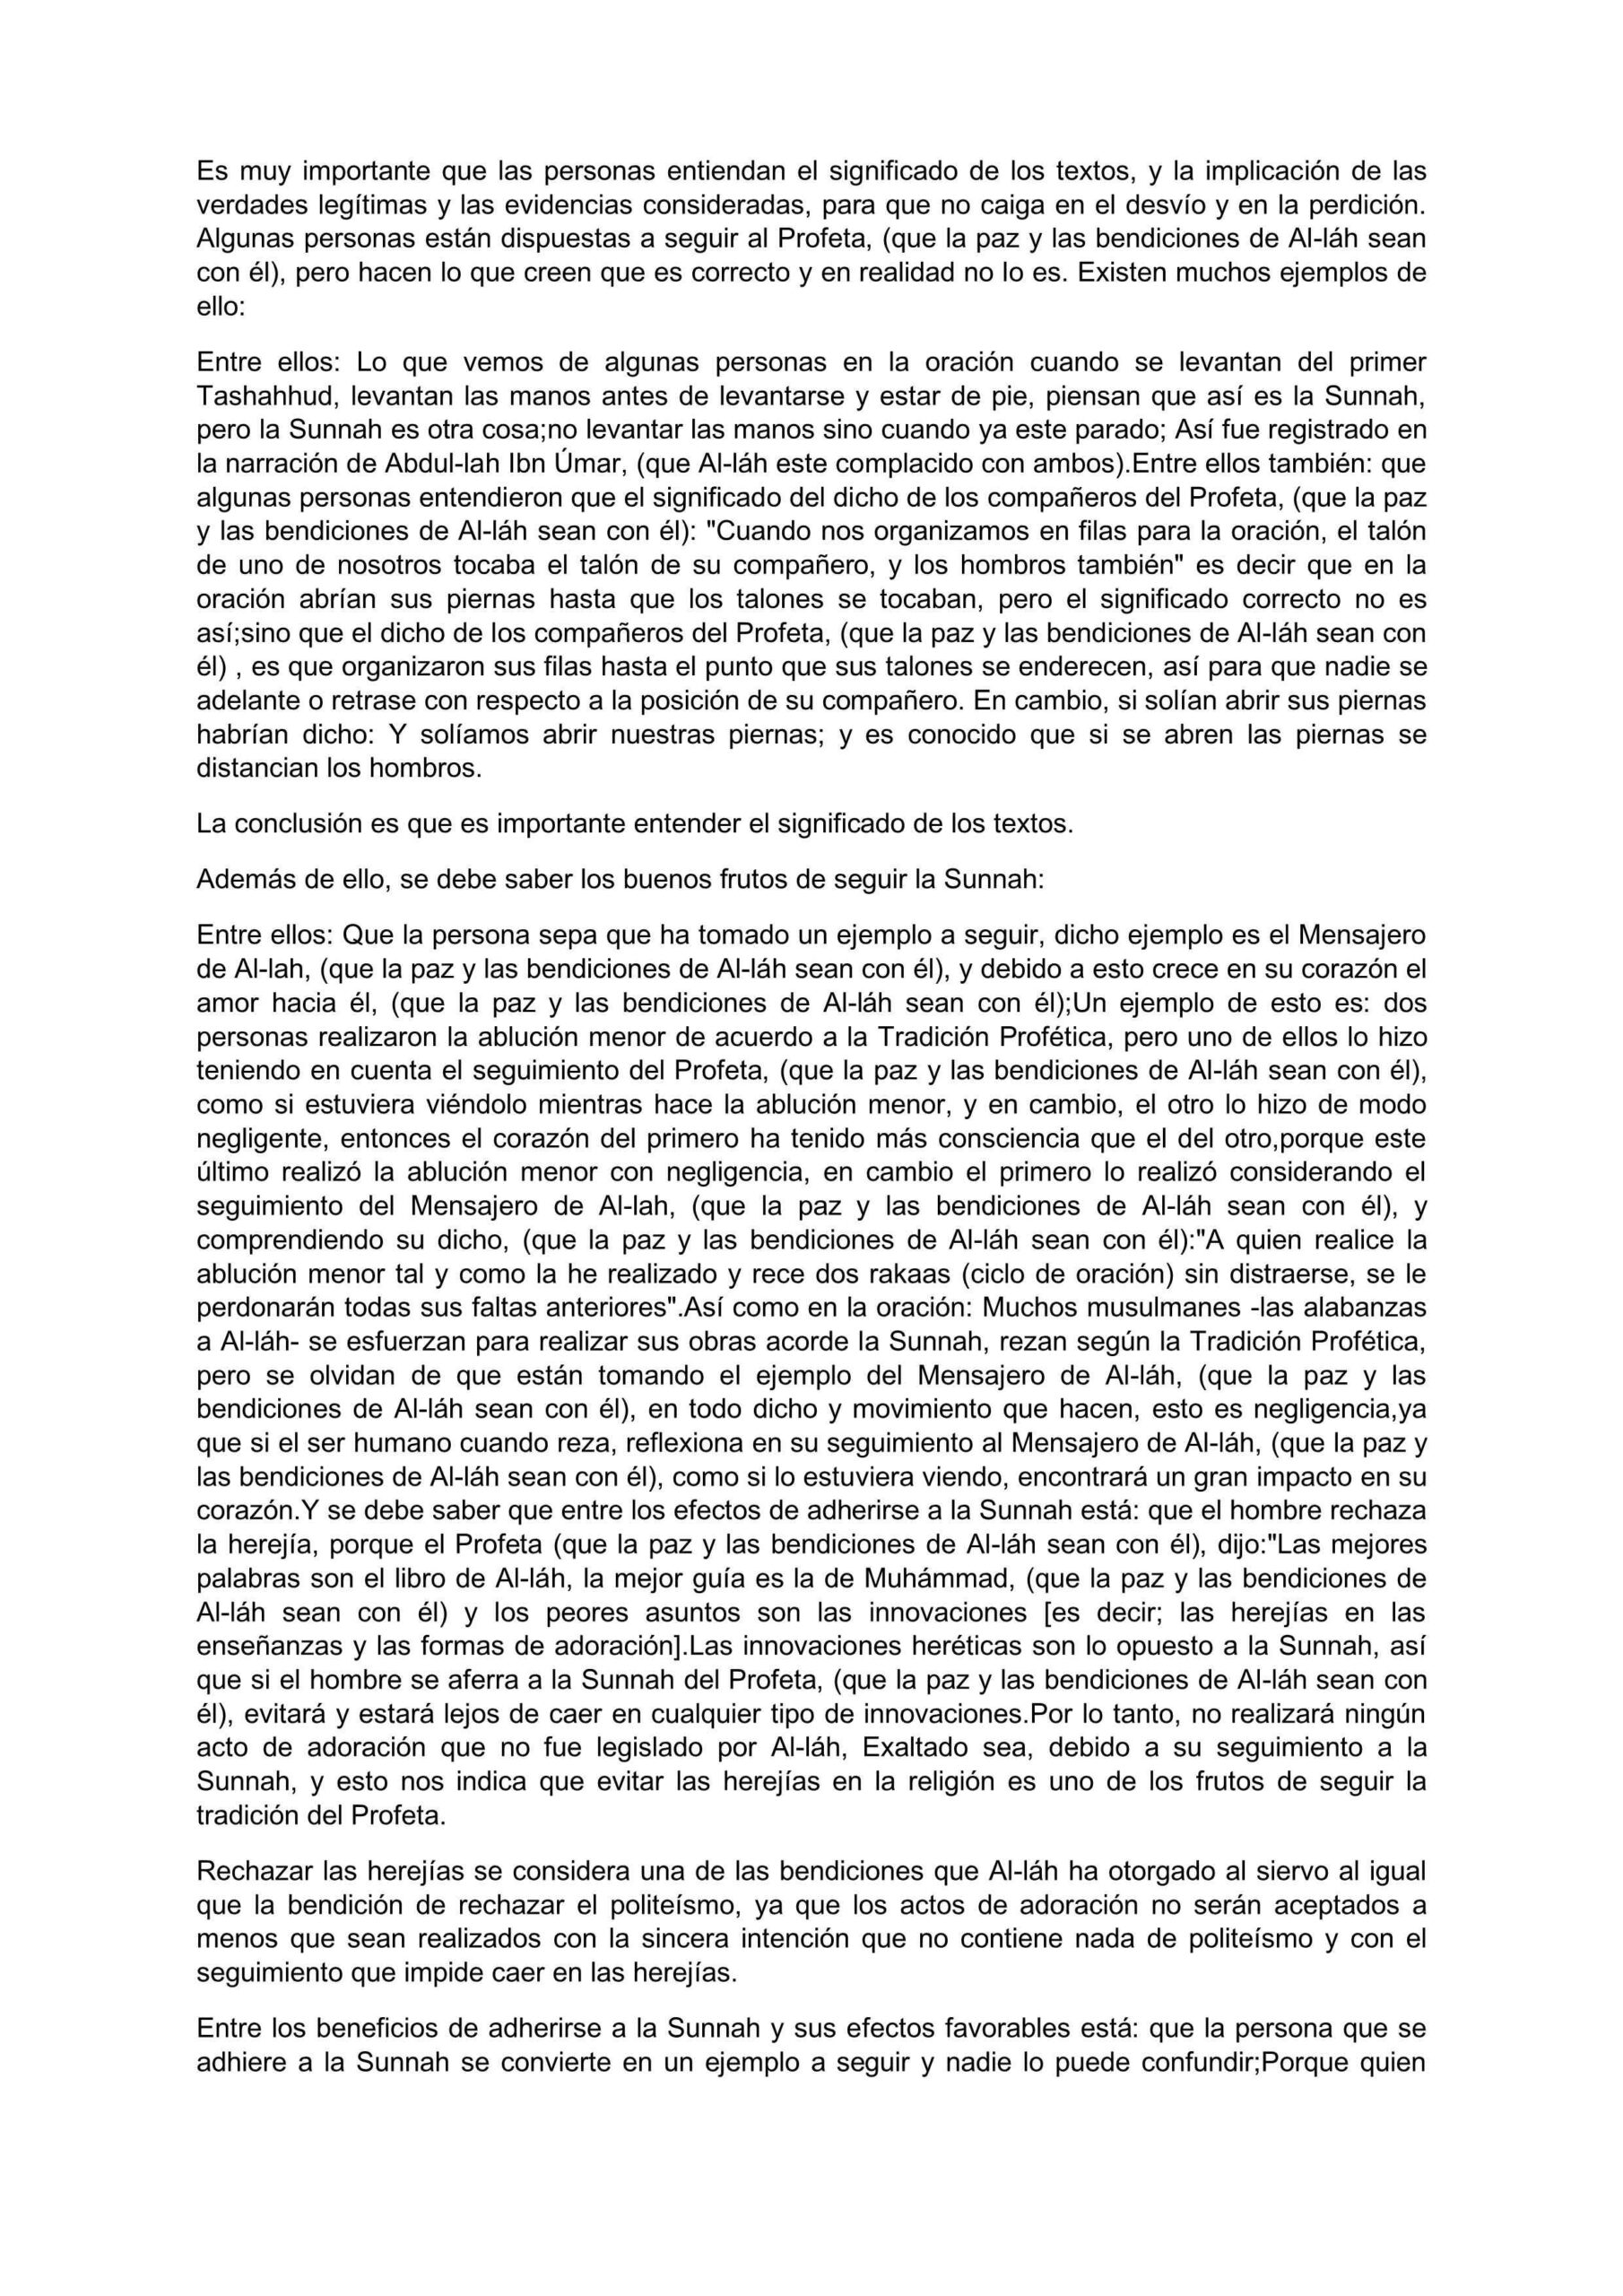 إسباني - التمسك بالسنة النبوية - La Adhesión a la Tradición Profética y sus efectos.pdf, 23-Sayfa 